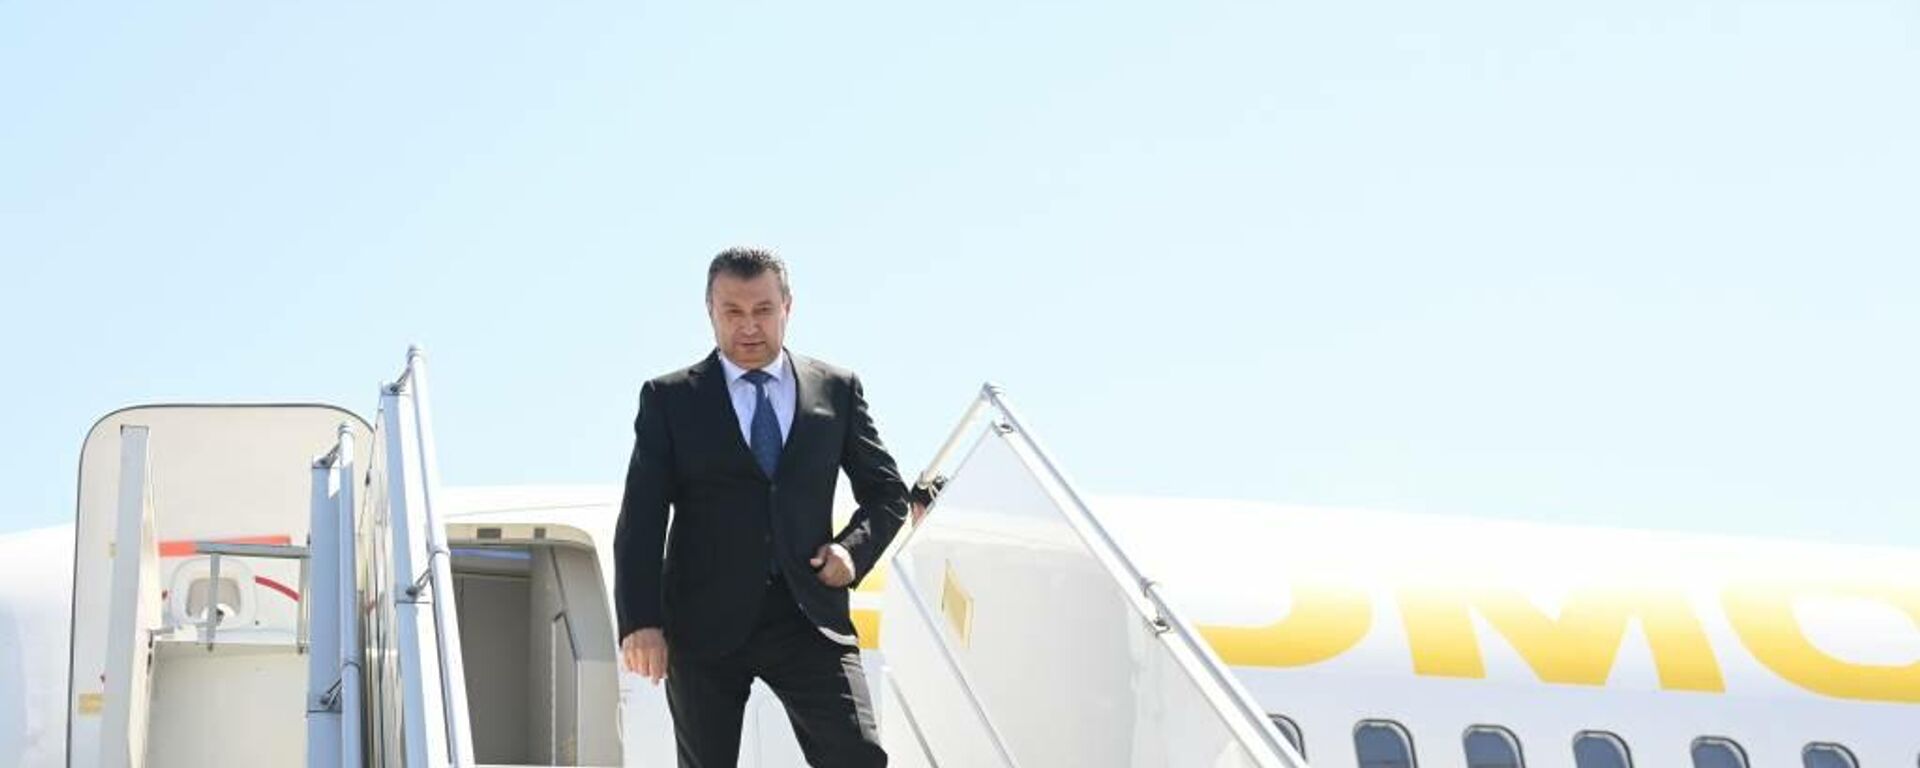 Премьер-министр Таджикистана Кохир Расулзода прибыл в Ташкент - Sputnik Тоҷикистон, 1920, 14.05.2021